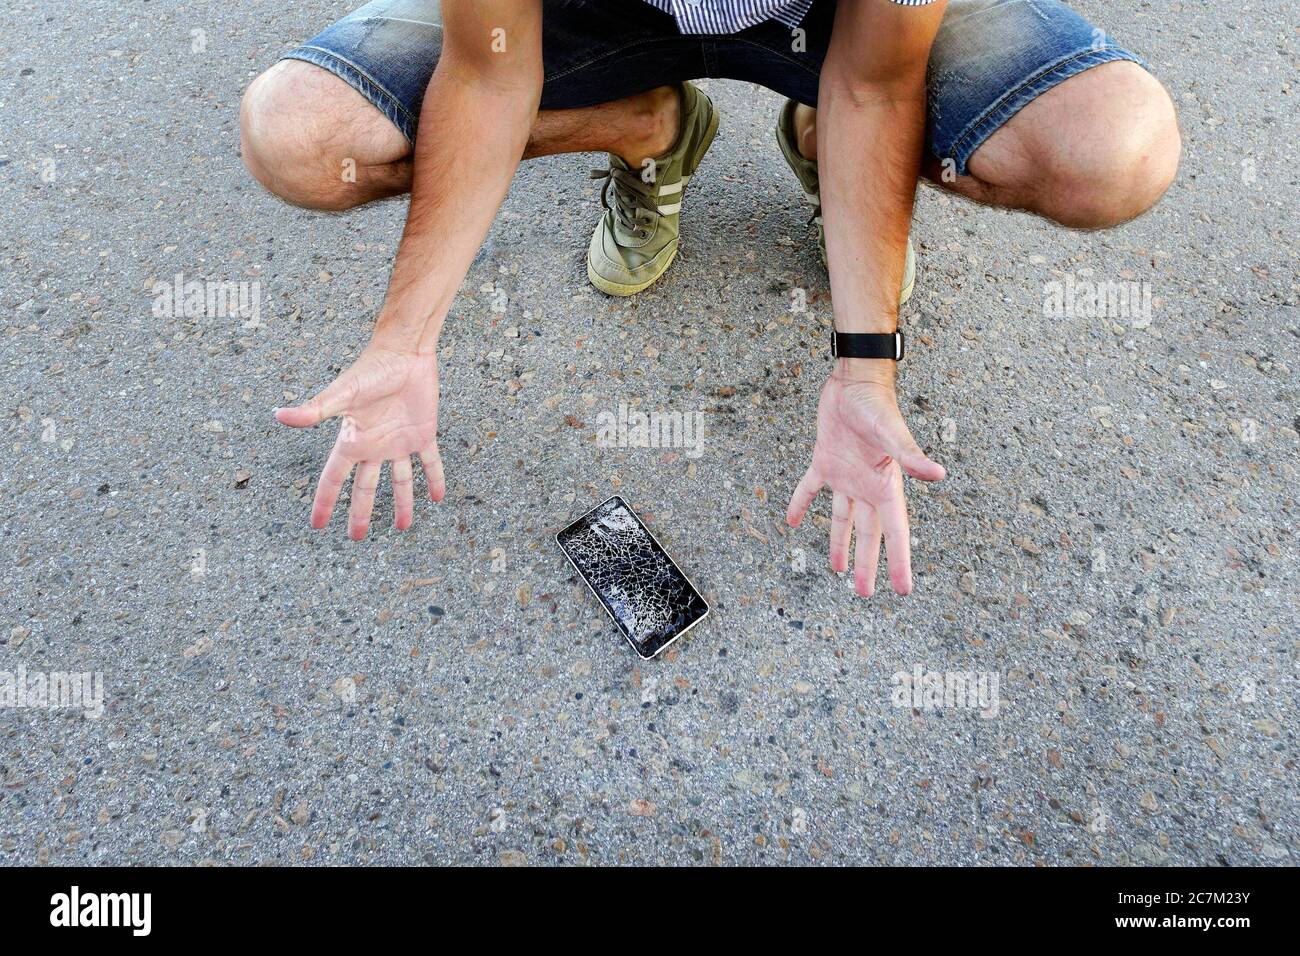 Guy ließ sein Handy auf den Asphalt fallen und brach es. Ein frustrierter Mann mit einem defekten Handy. Mann sitzt und hält ein defektes Smartphone Stockfoto